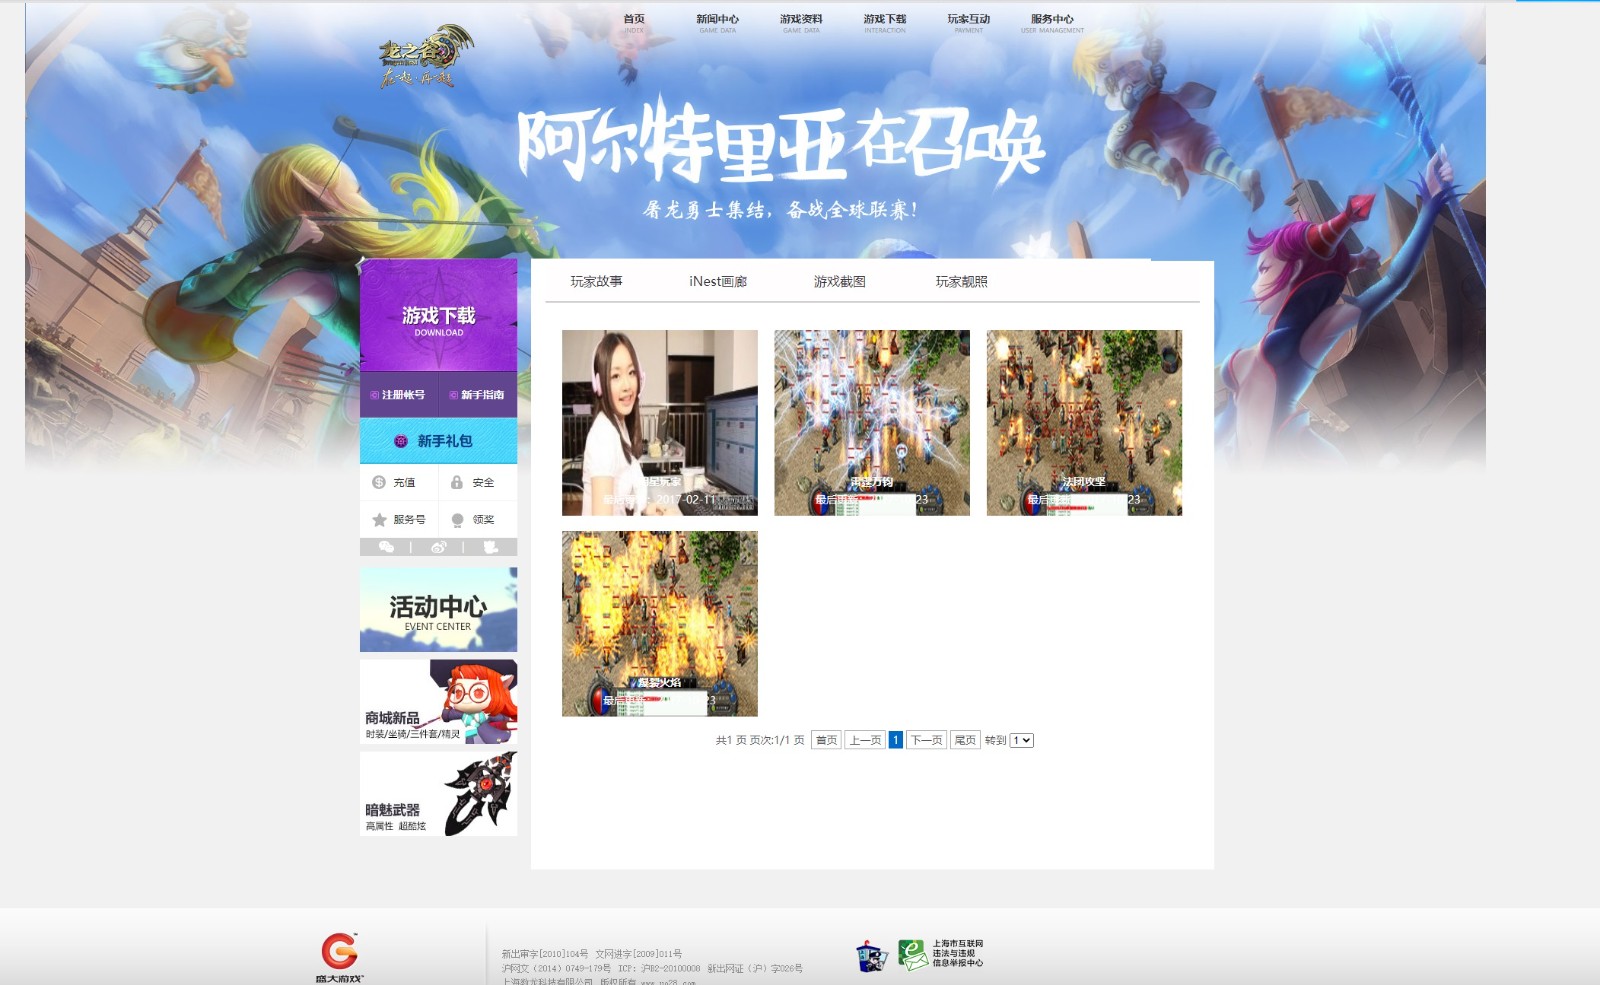 原龙之谷旧版官网网站高仿程度98%